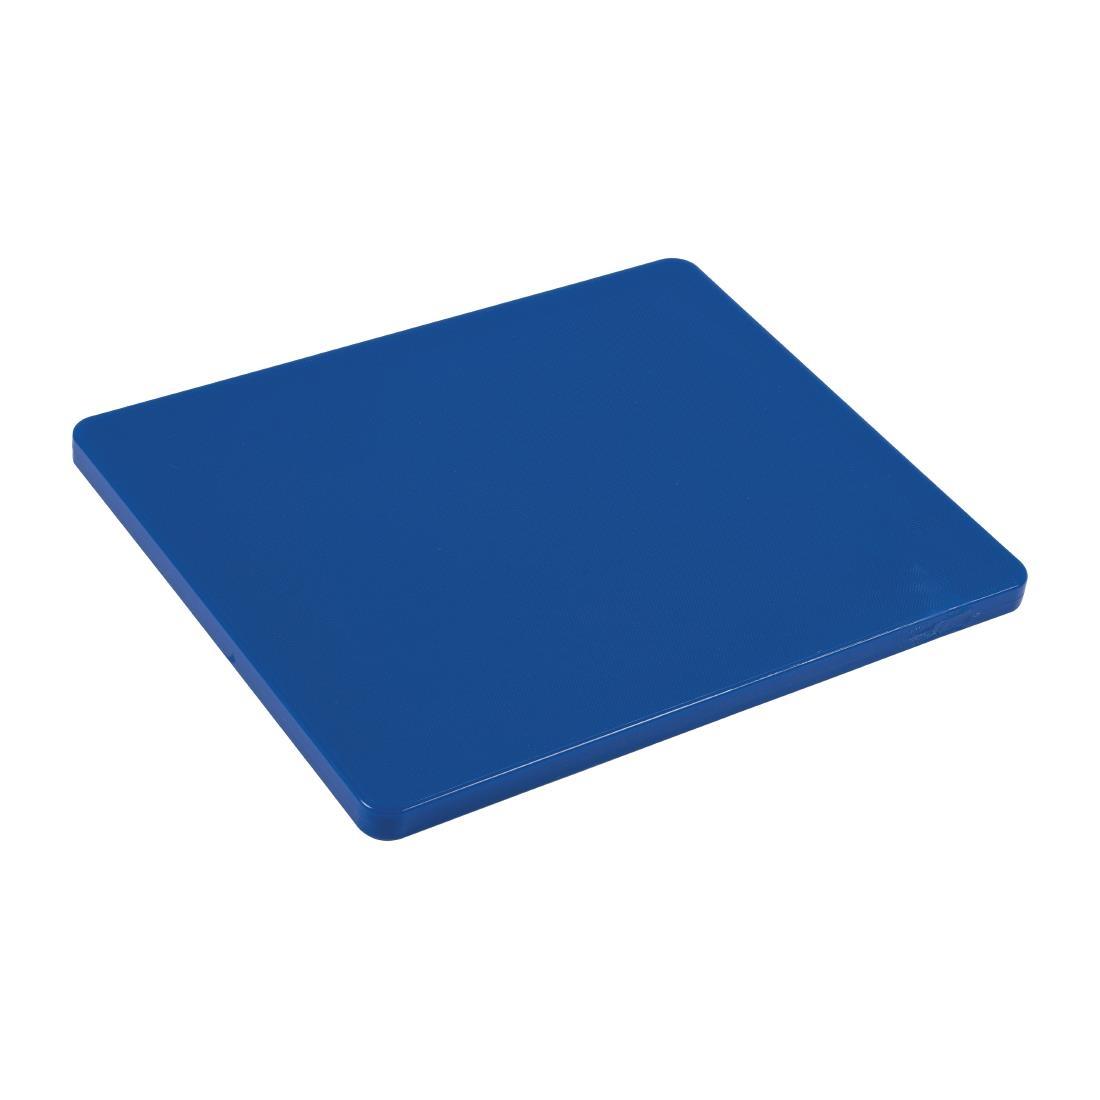 Hygiplas Gastronorm 1/2 Blue Chopping Board- Each - GL291 - 1